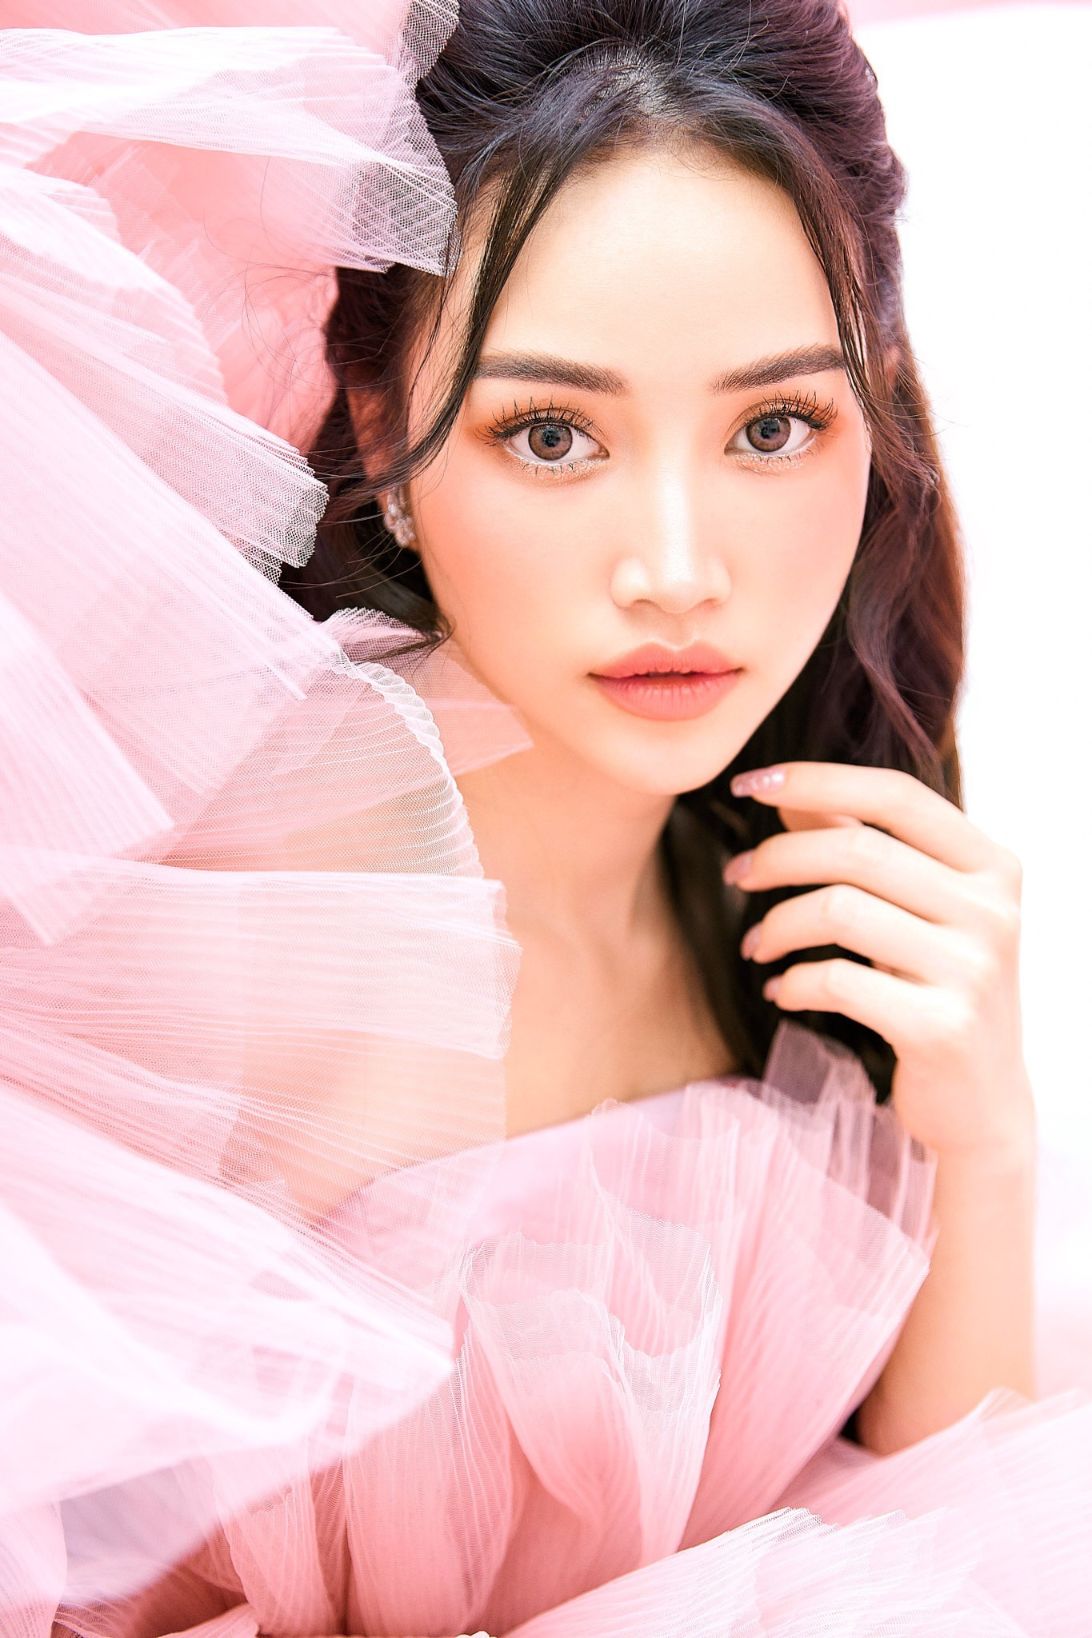 ha dan chi 1 Diễn viên, người mẫu Hà Đan Chi khiến fan bấn loạn bởi bộ hình mới đẹp như nàng thơ